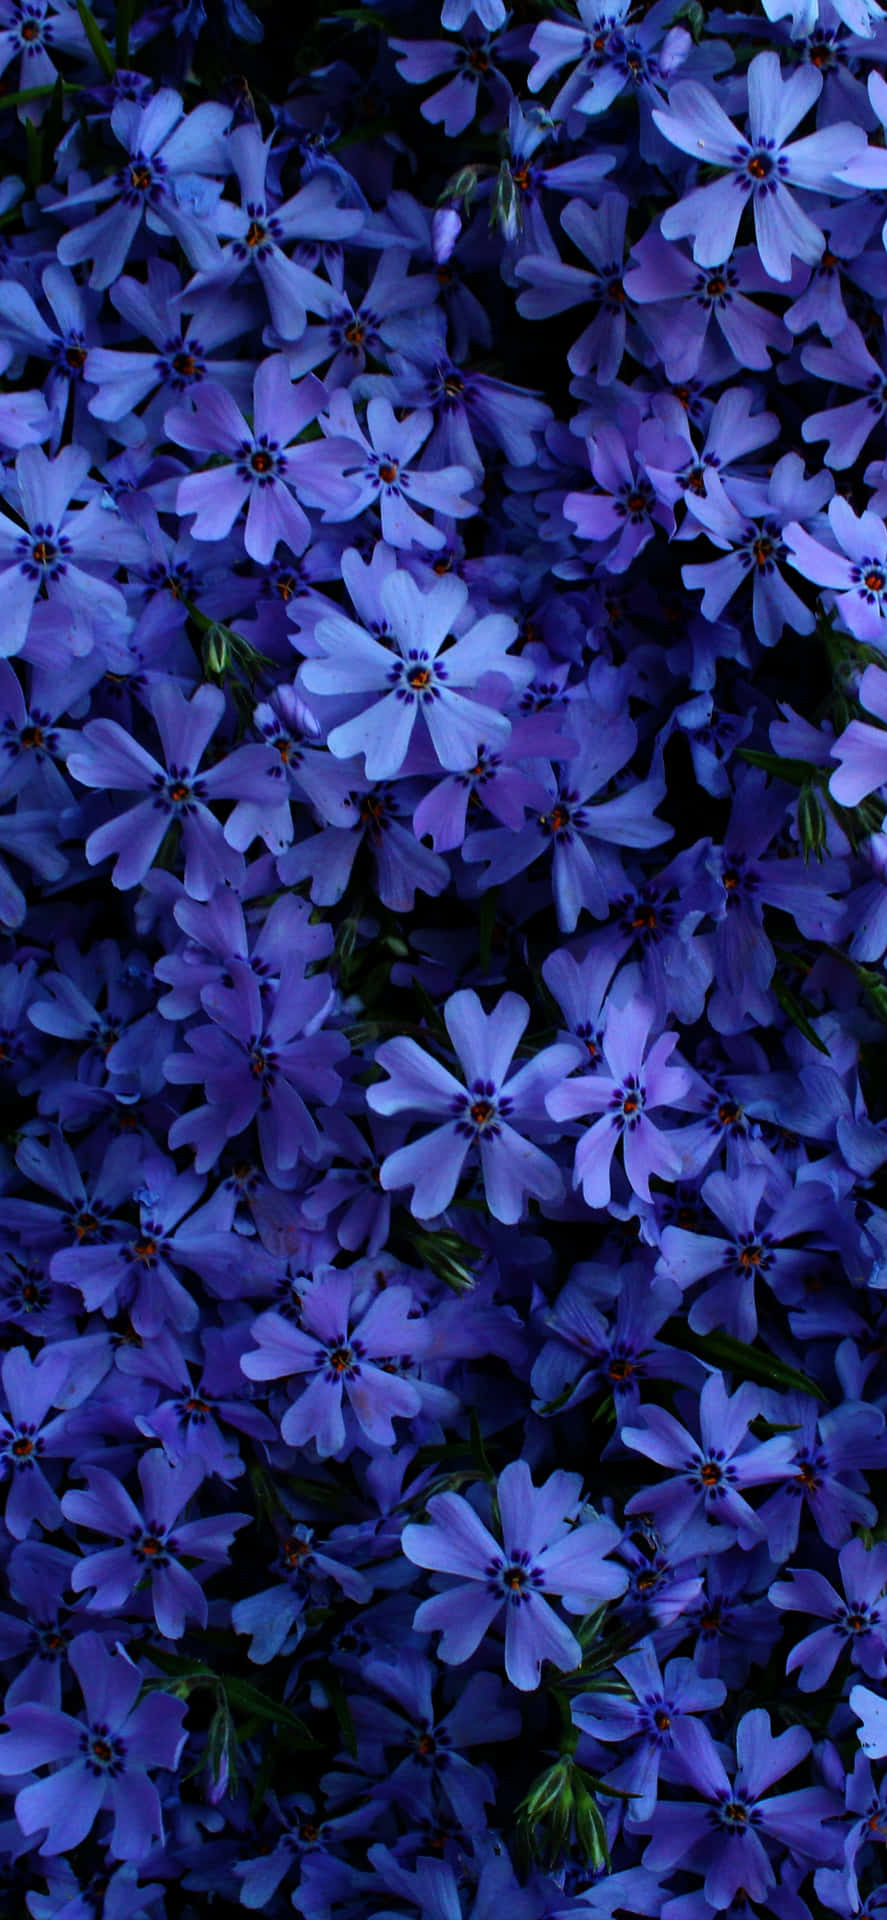 Imagemde Flores Em Roxo Escuro E Azul.